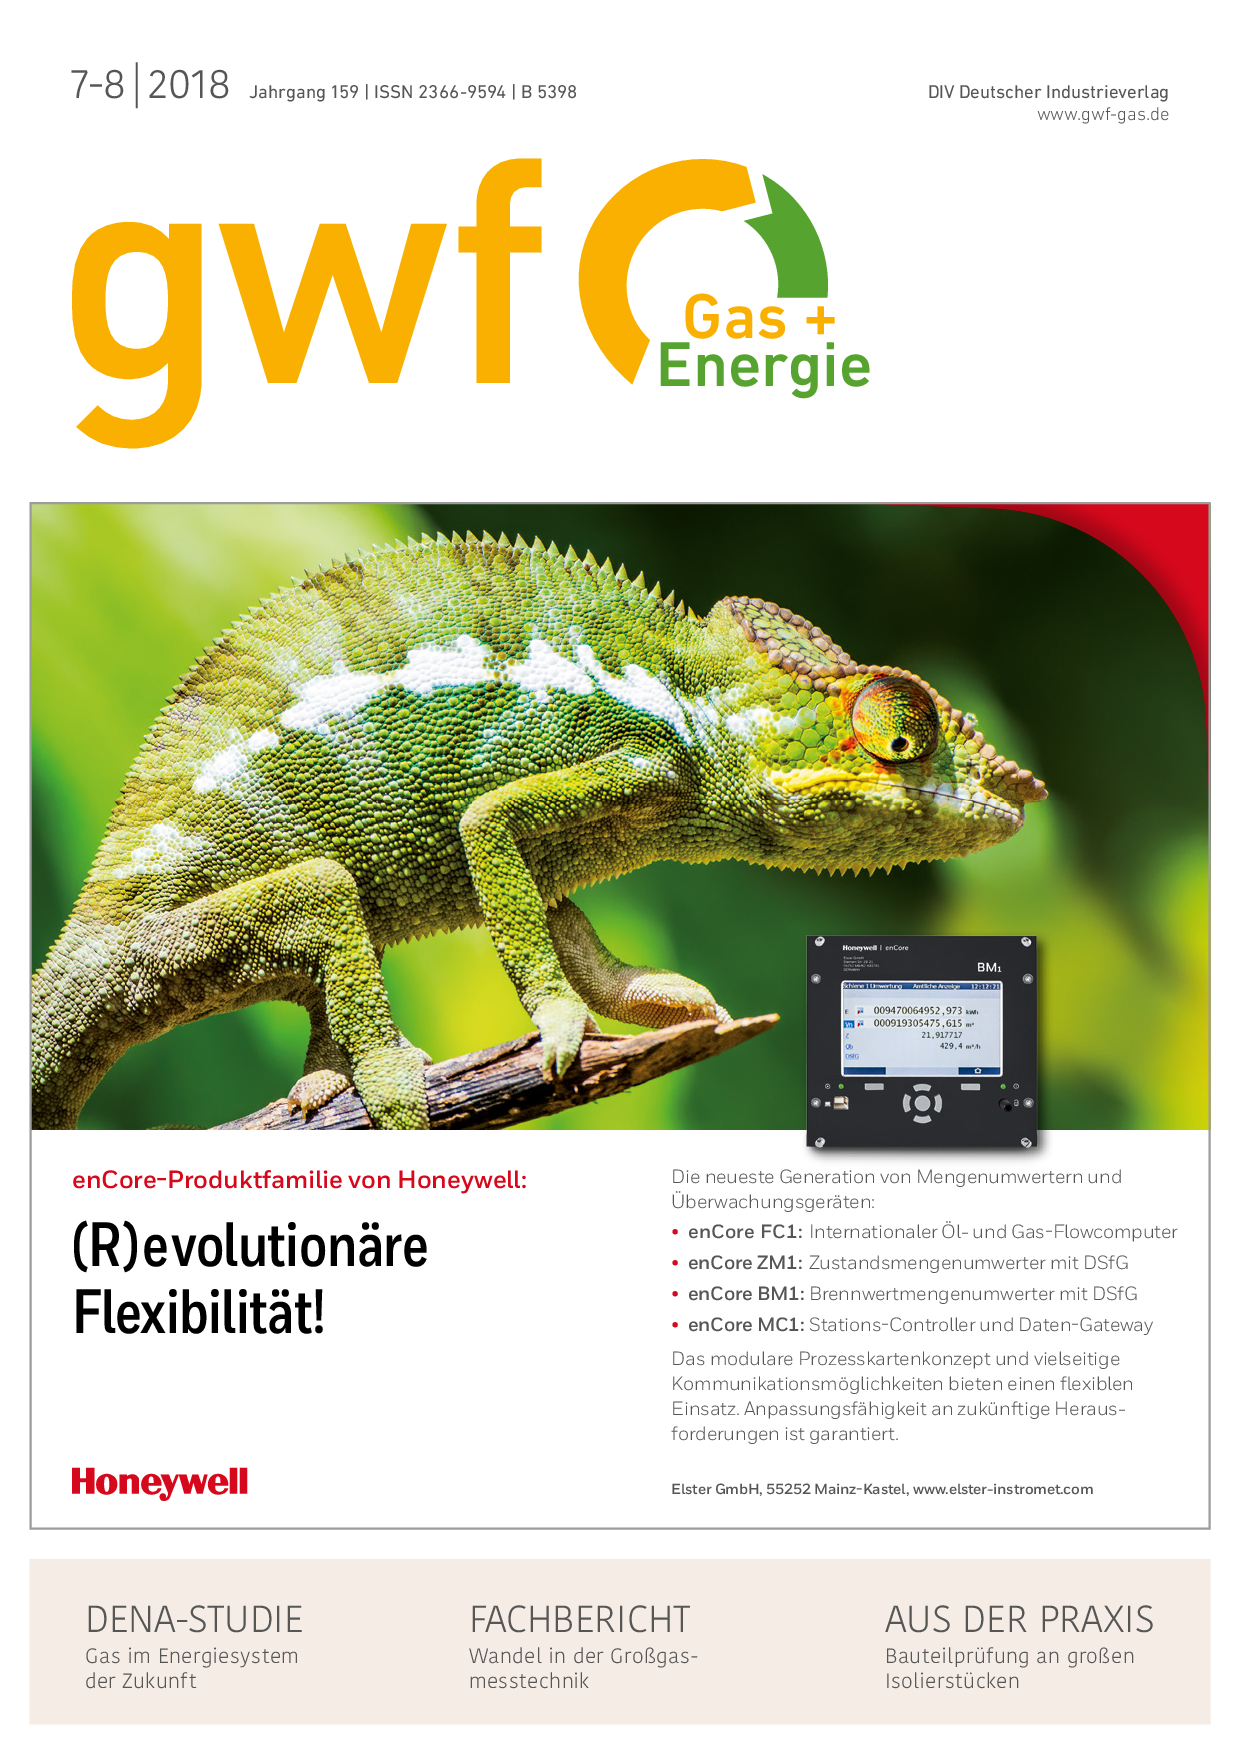 gwf Gas+Energie - 07-08 2018